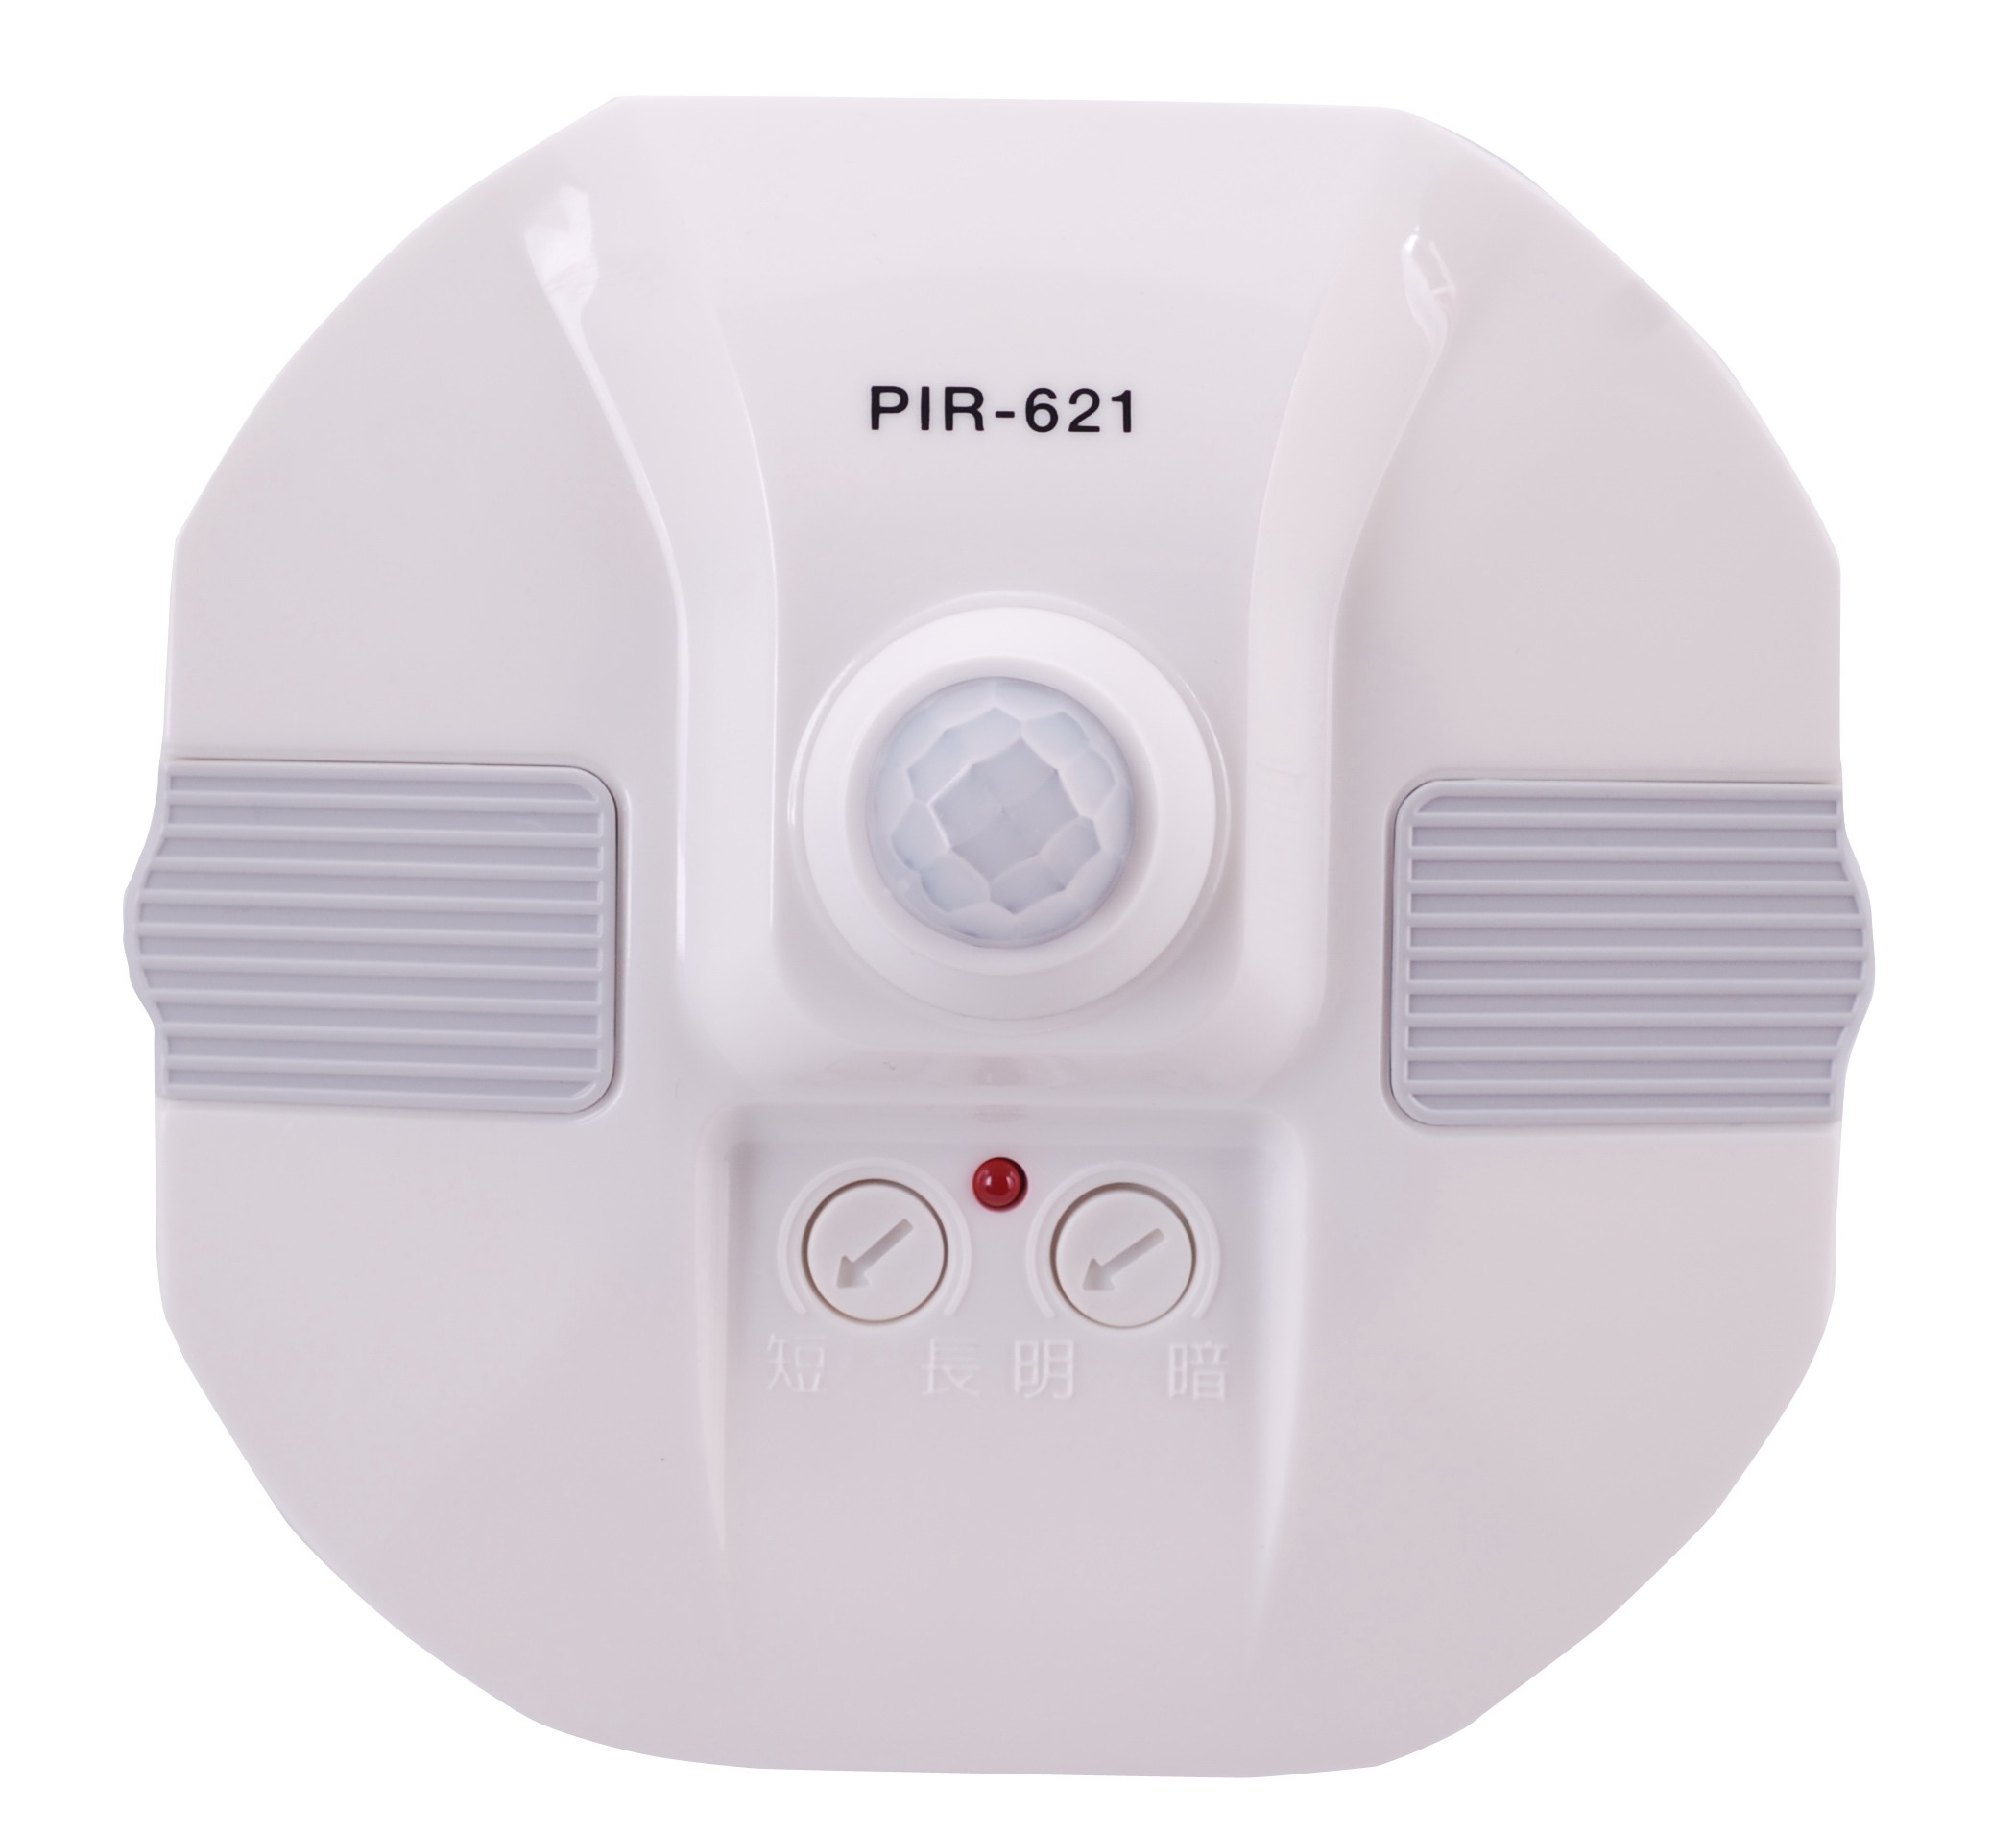 PIR-621 Ceiling Sensor